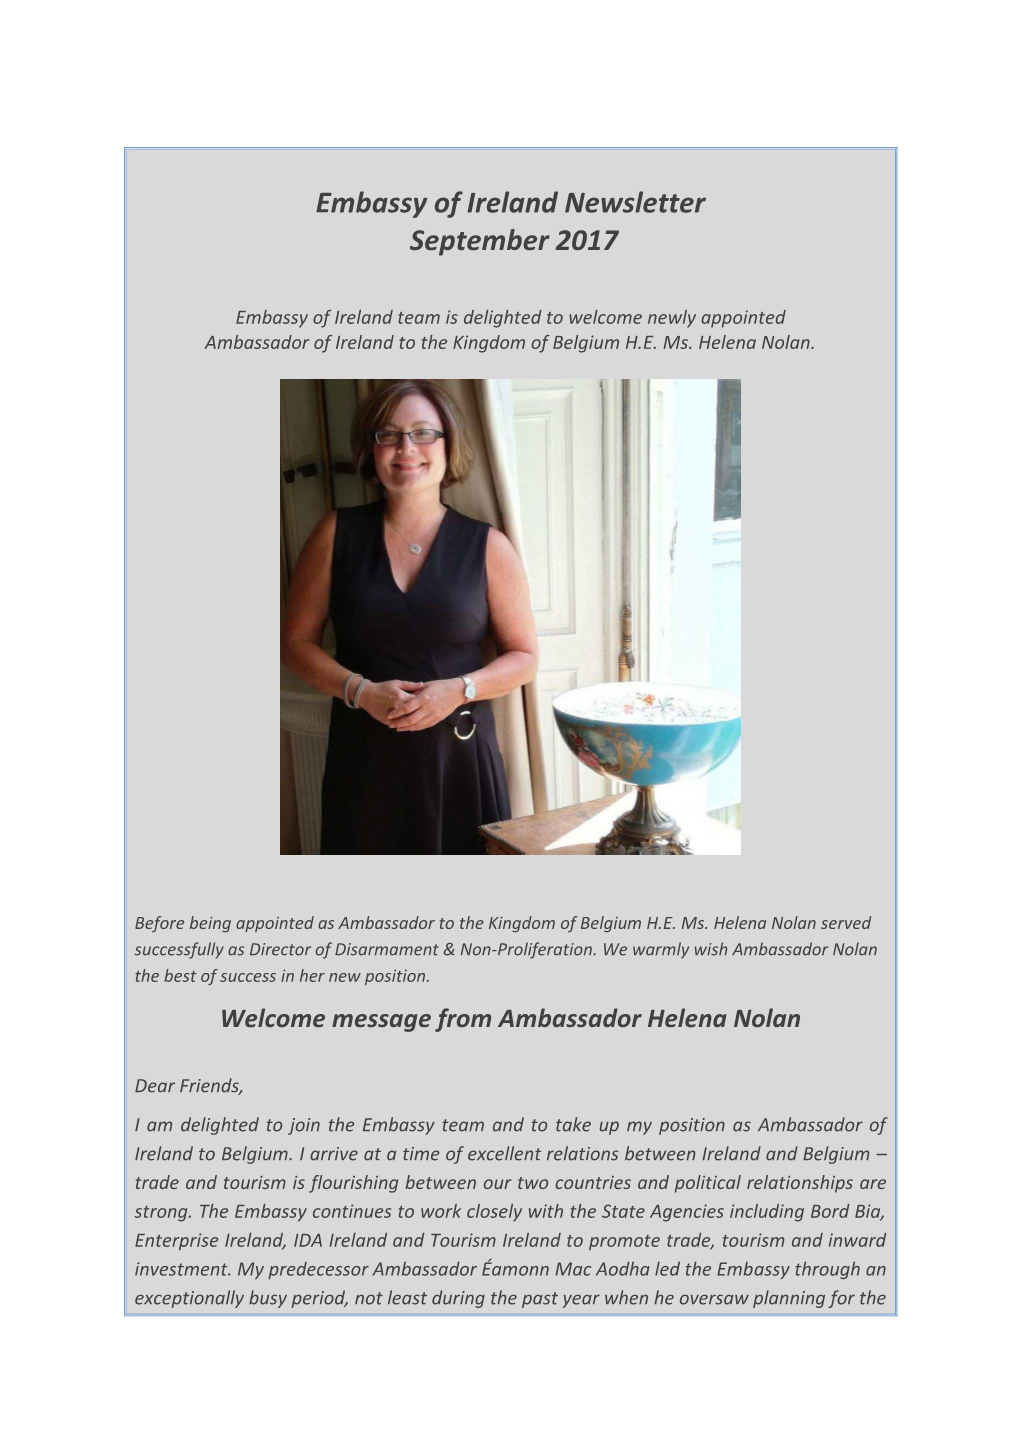 Embassy of Ireland Newsletter September 2017